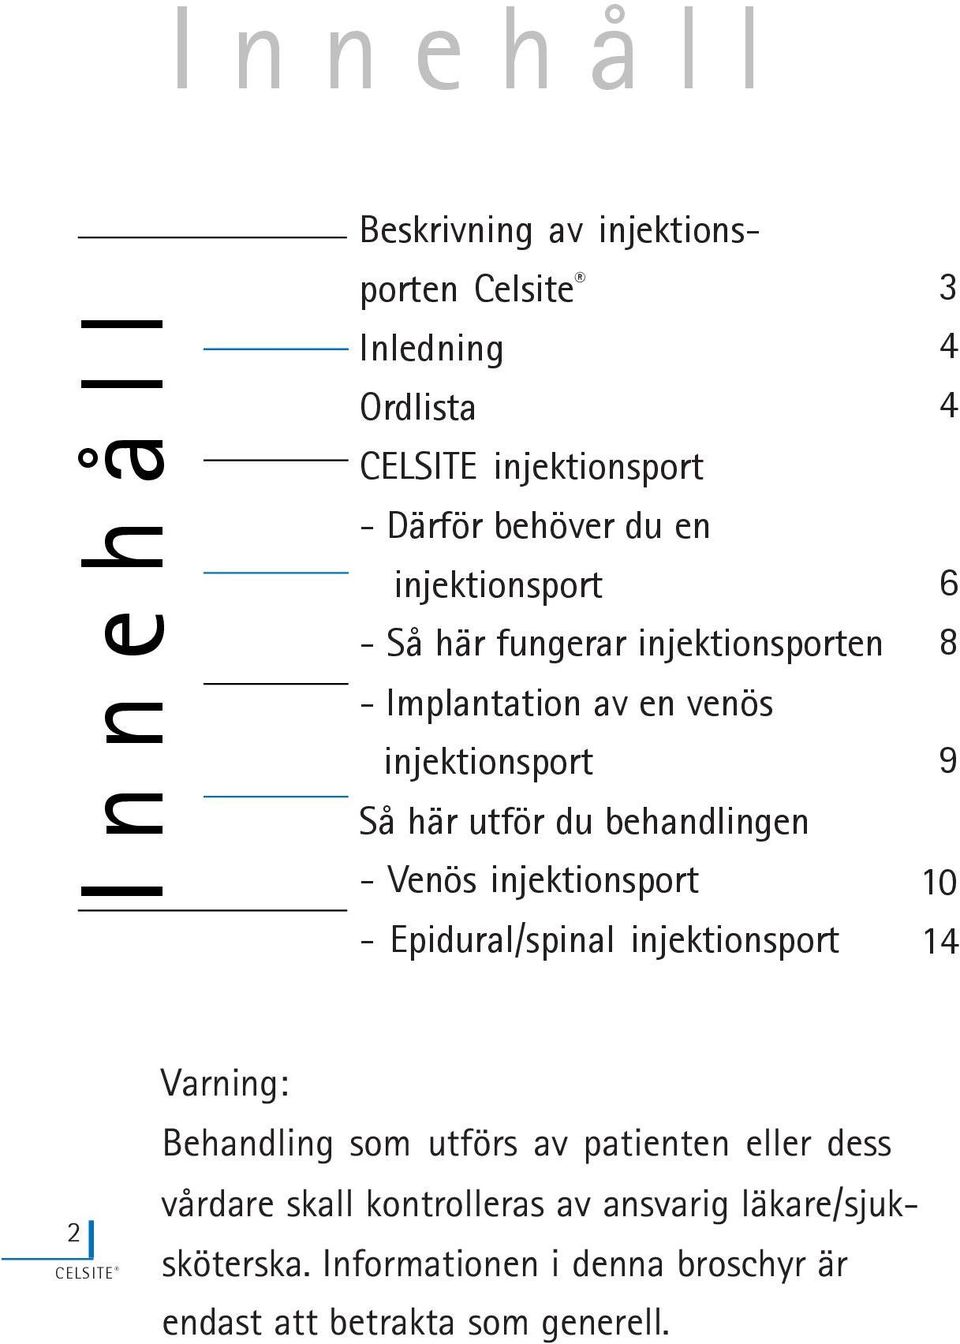 Venös injektionsport - Epidural/spinal injektionsport 3 4 4 6 8 9 10 1 4 2 Varning: Behandling som utförs av patienten eller